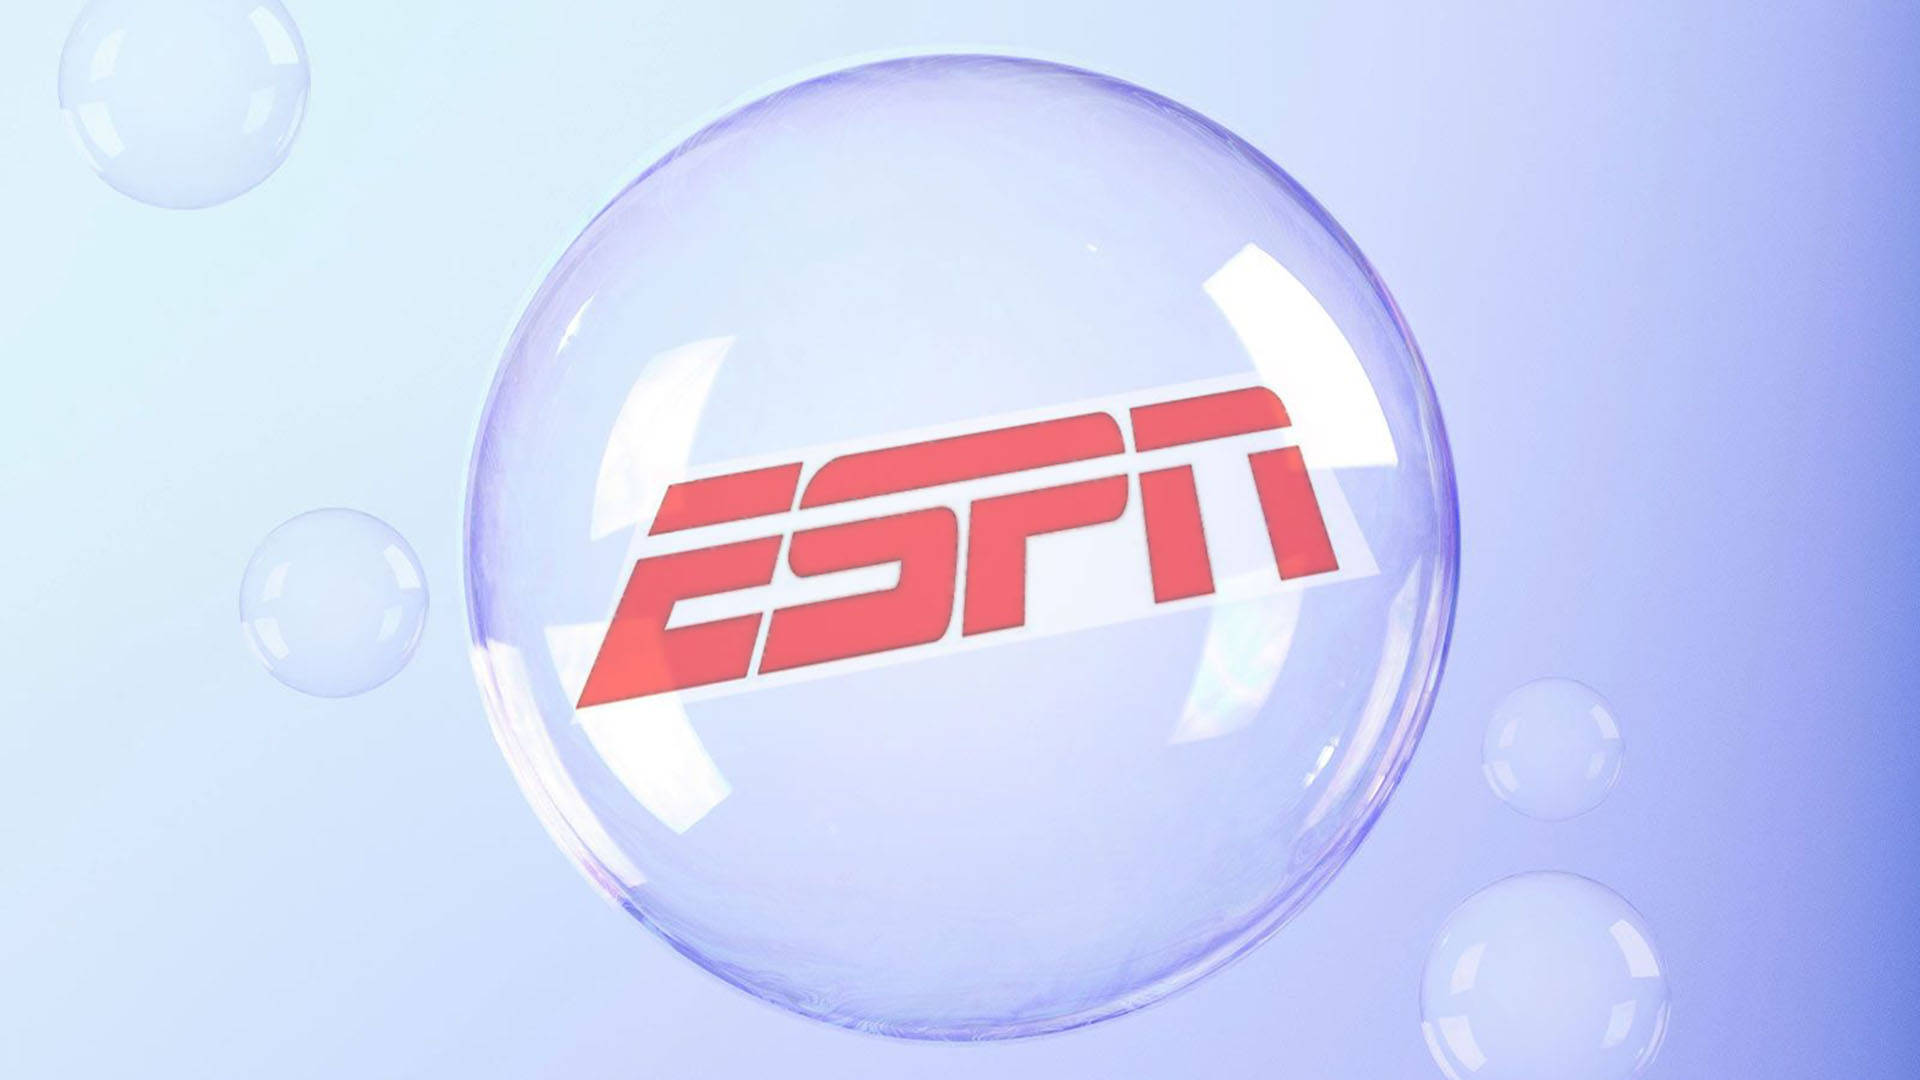 ESPN Logo In Bubbles Wallpaper